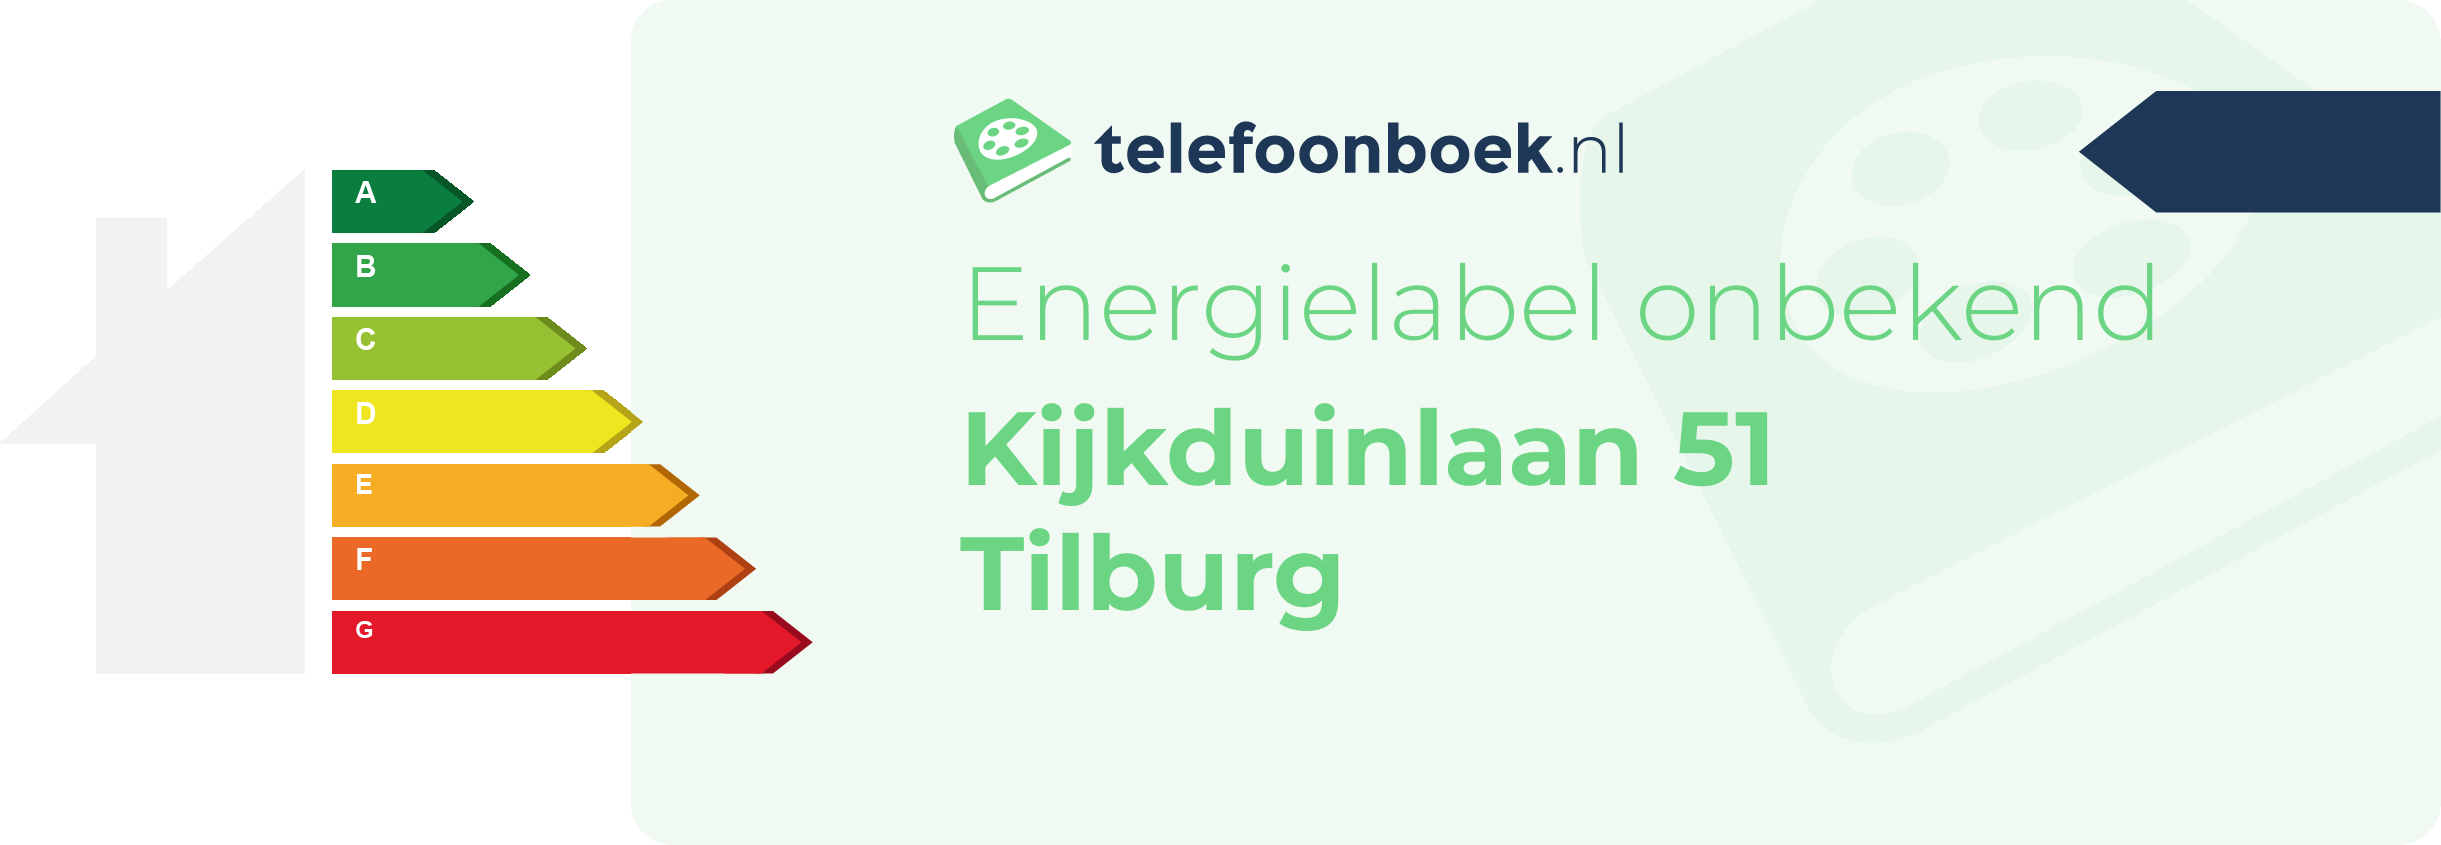 Energielabel Kijkduinlaan 51 Tilburg